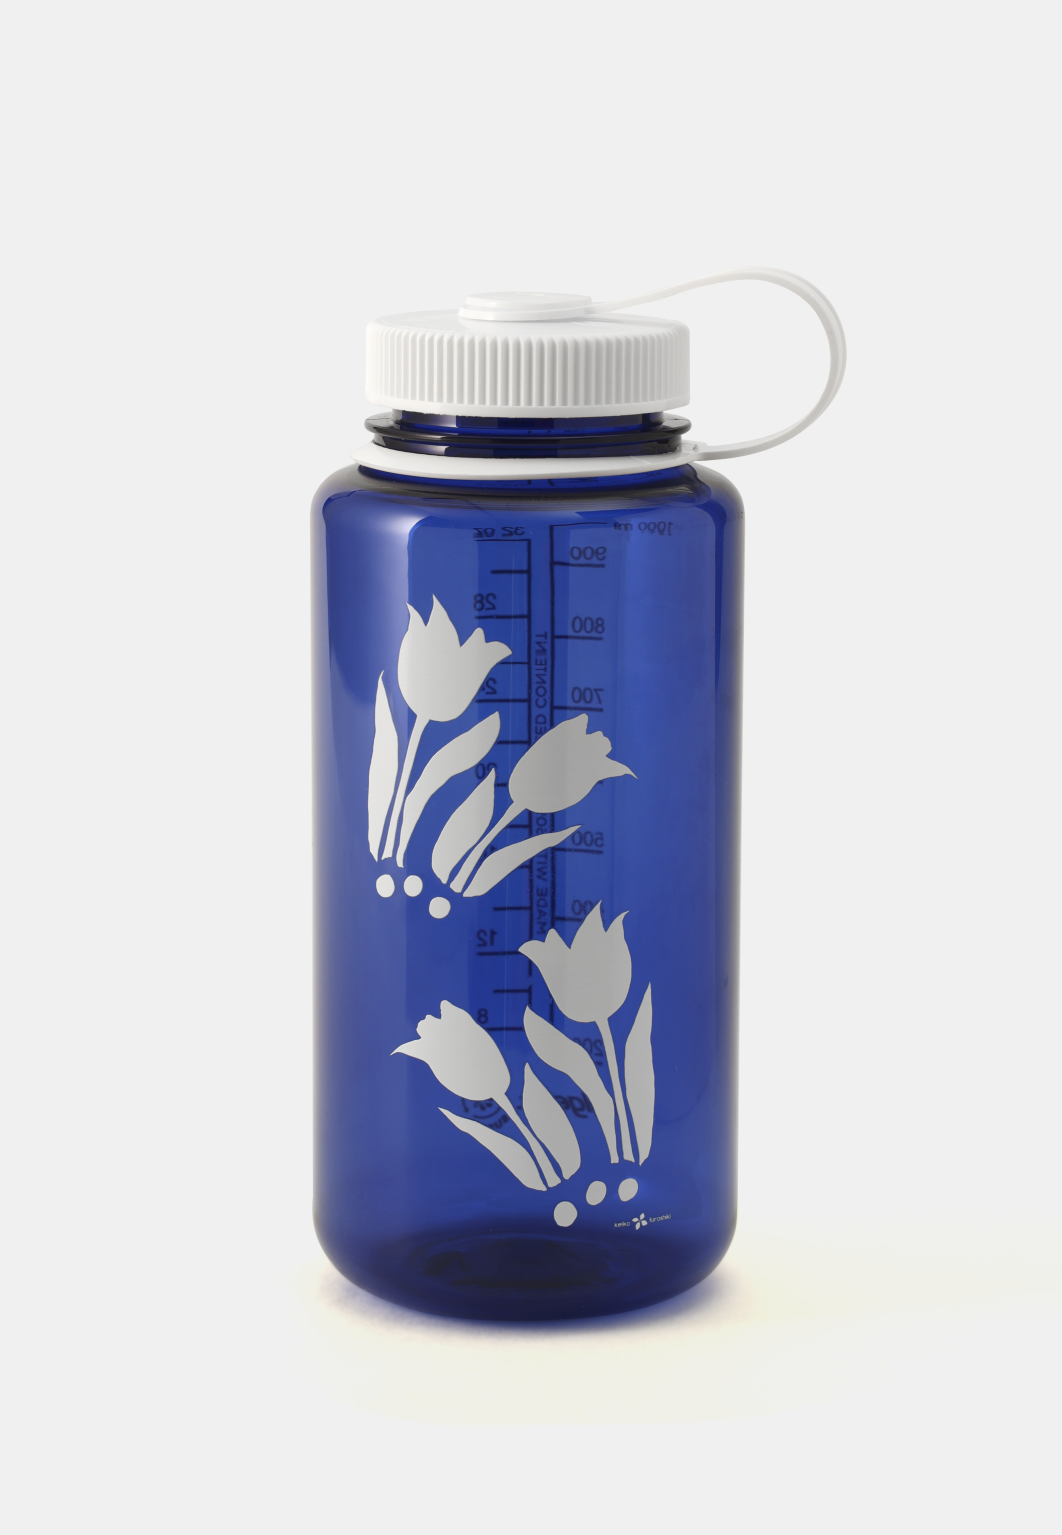 Limited Edition Furoshiki-Print Nalgene Water Bottles – Keiko